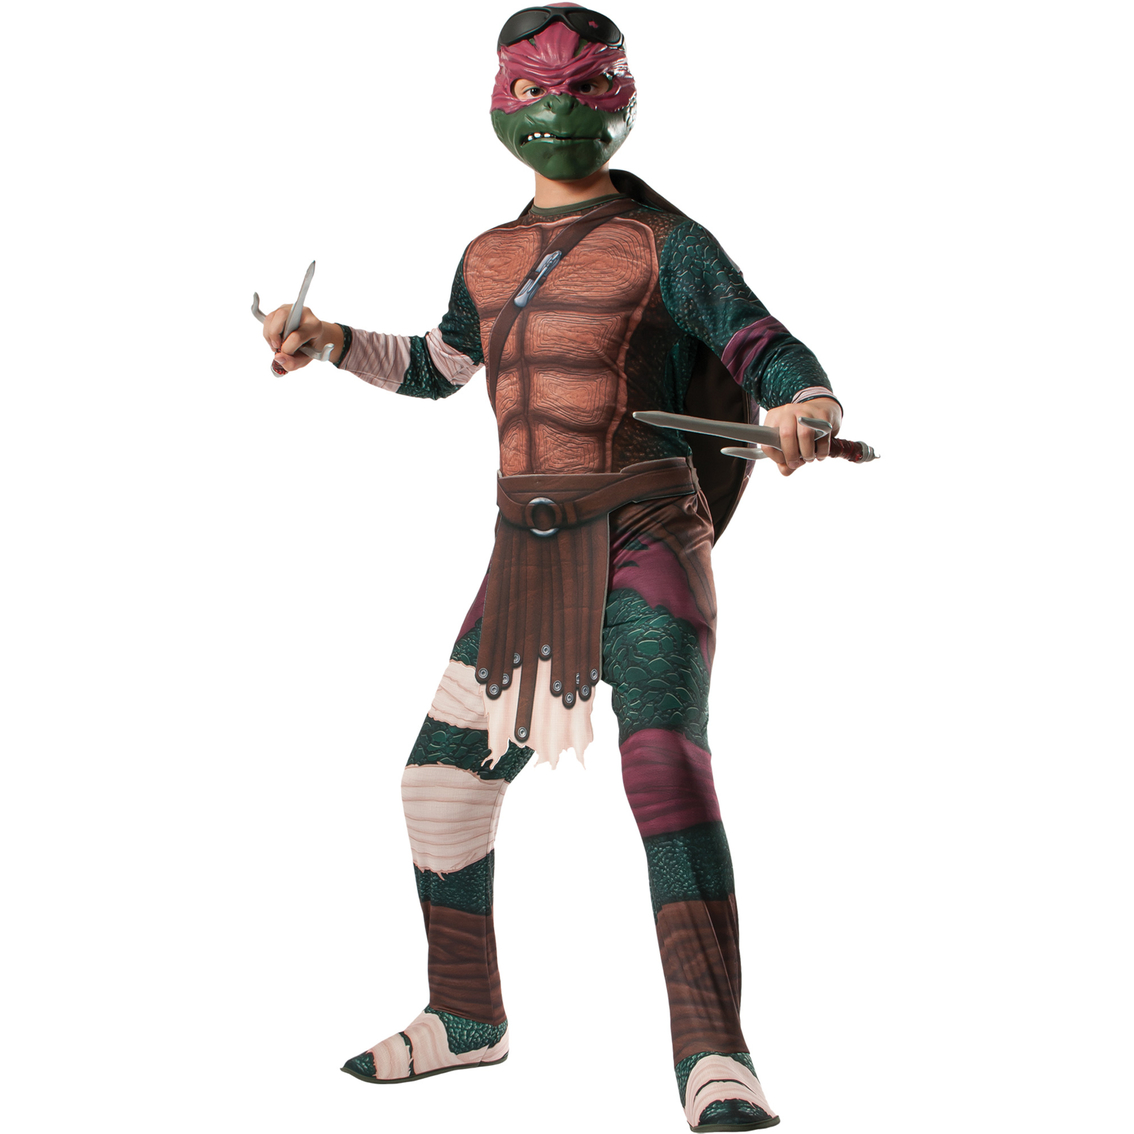 Adult Teenage Mutant Ninja Turtles T Shirt Costume Kit